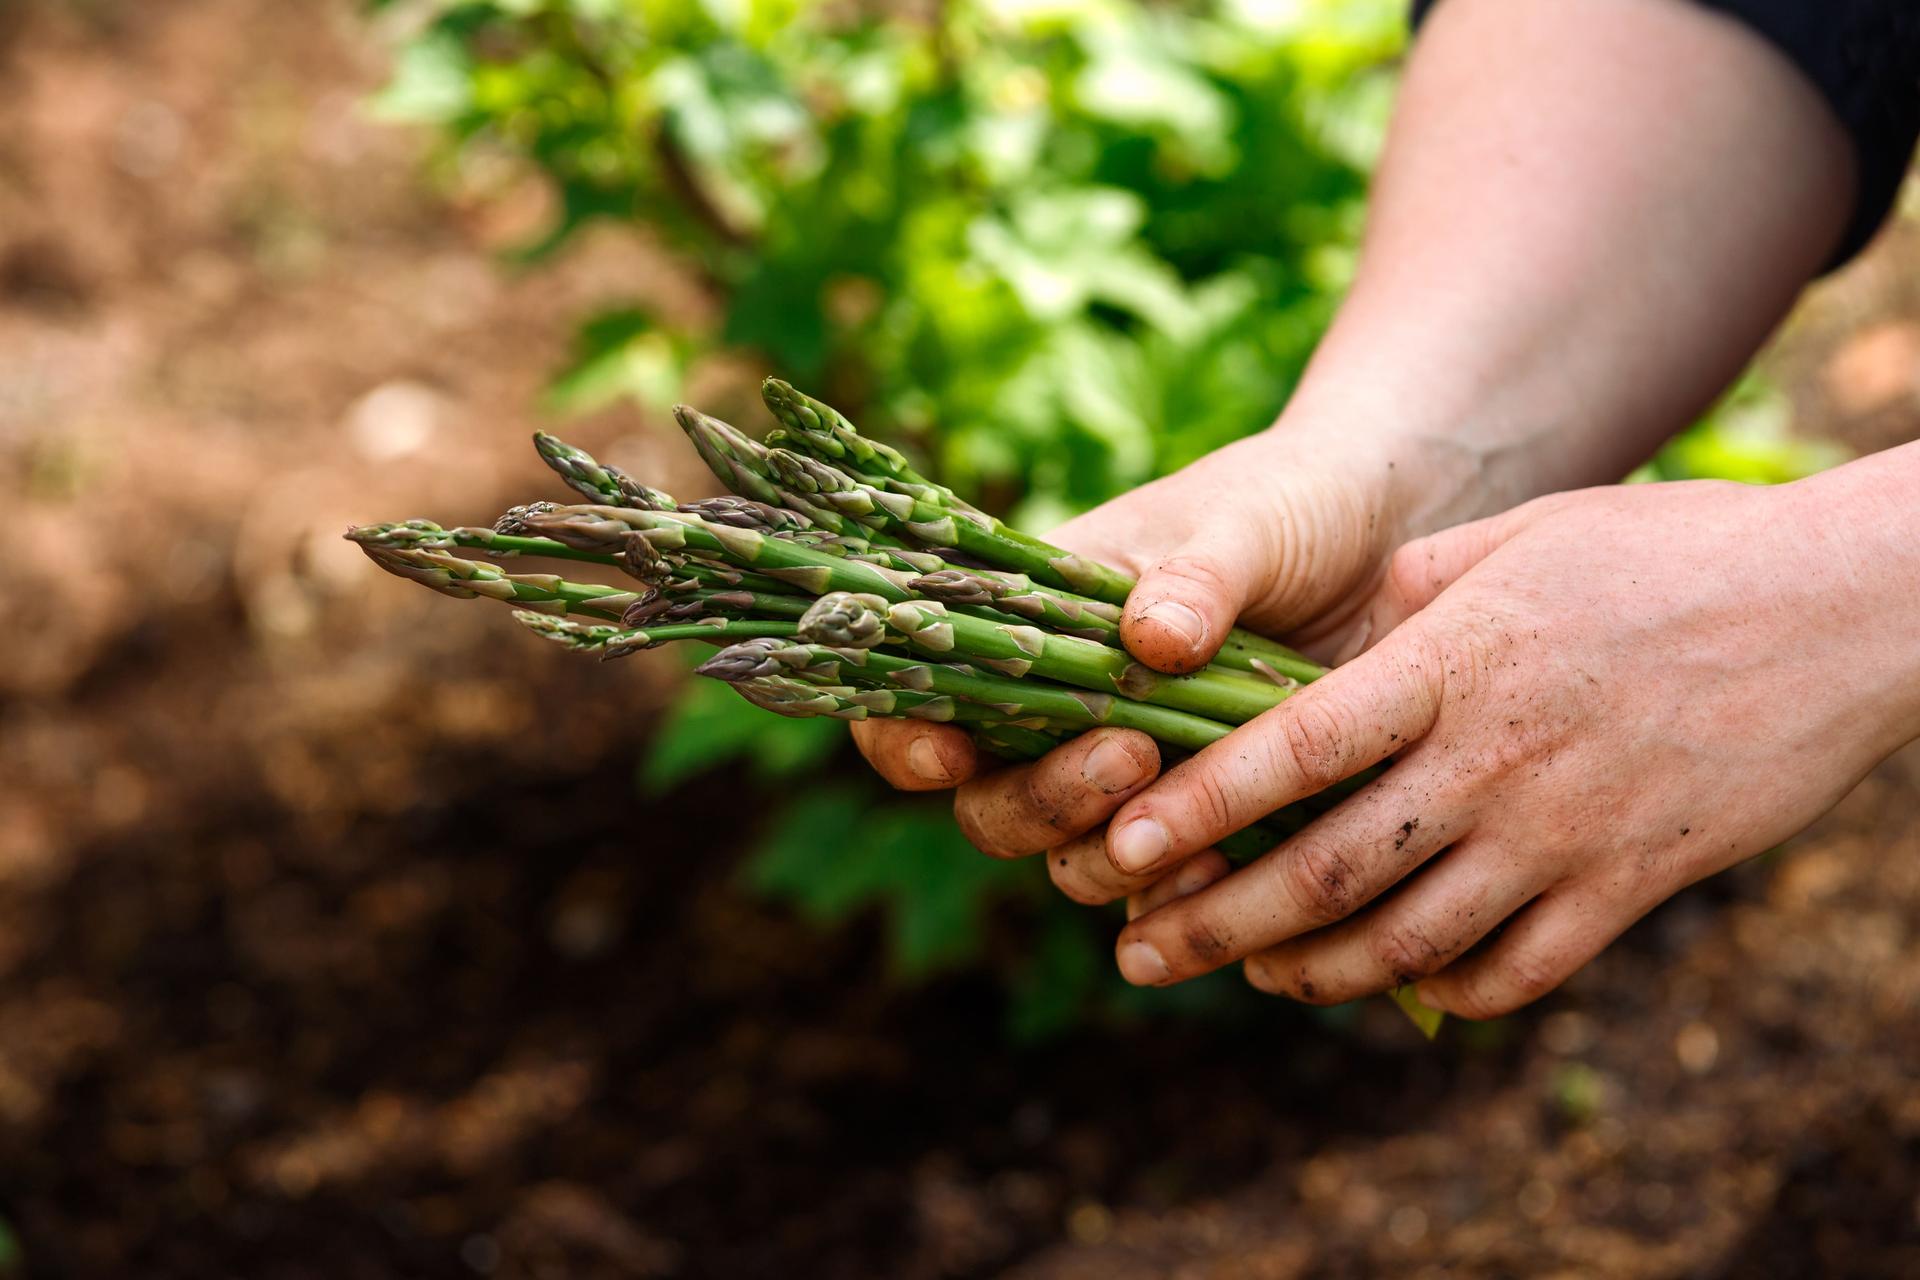 Asparagus harvesting